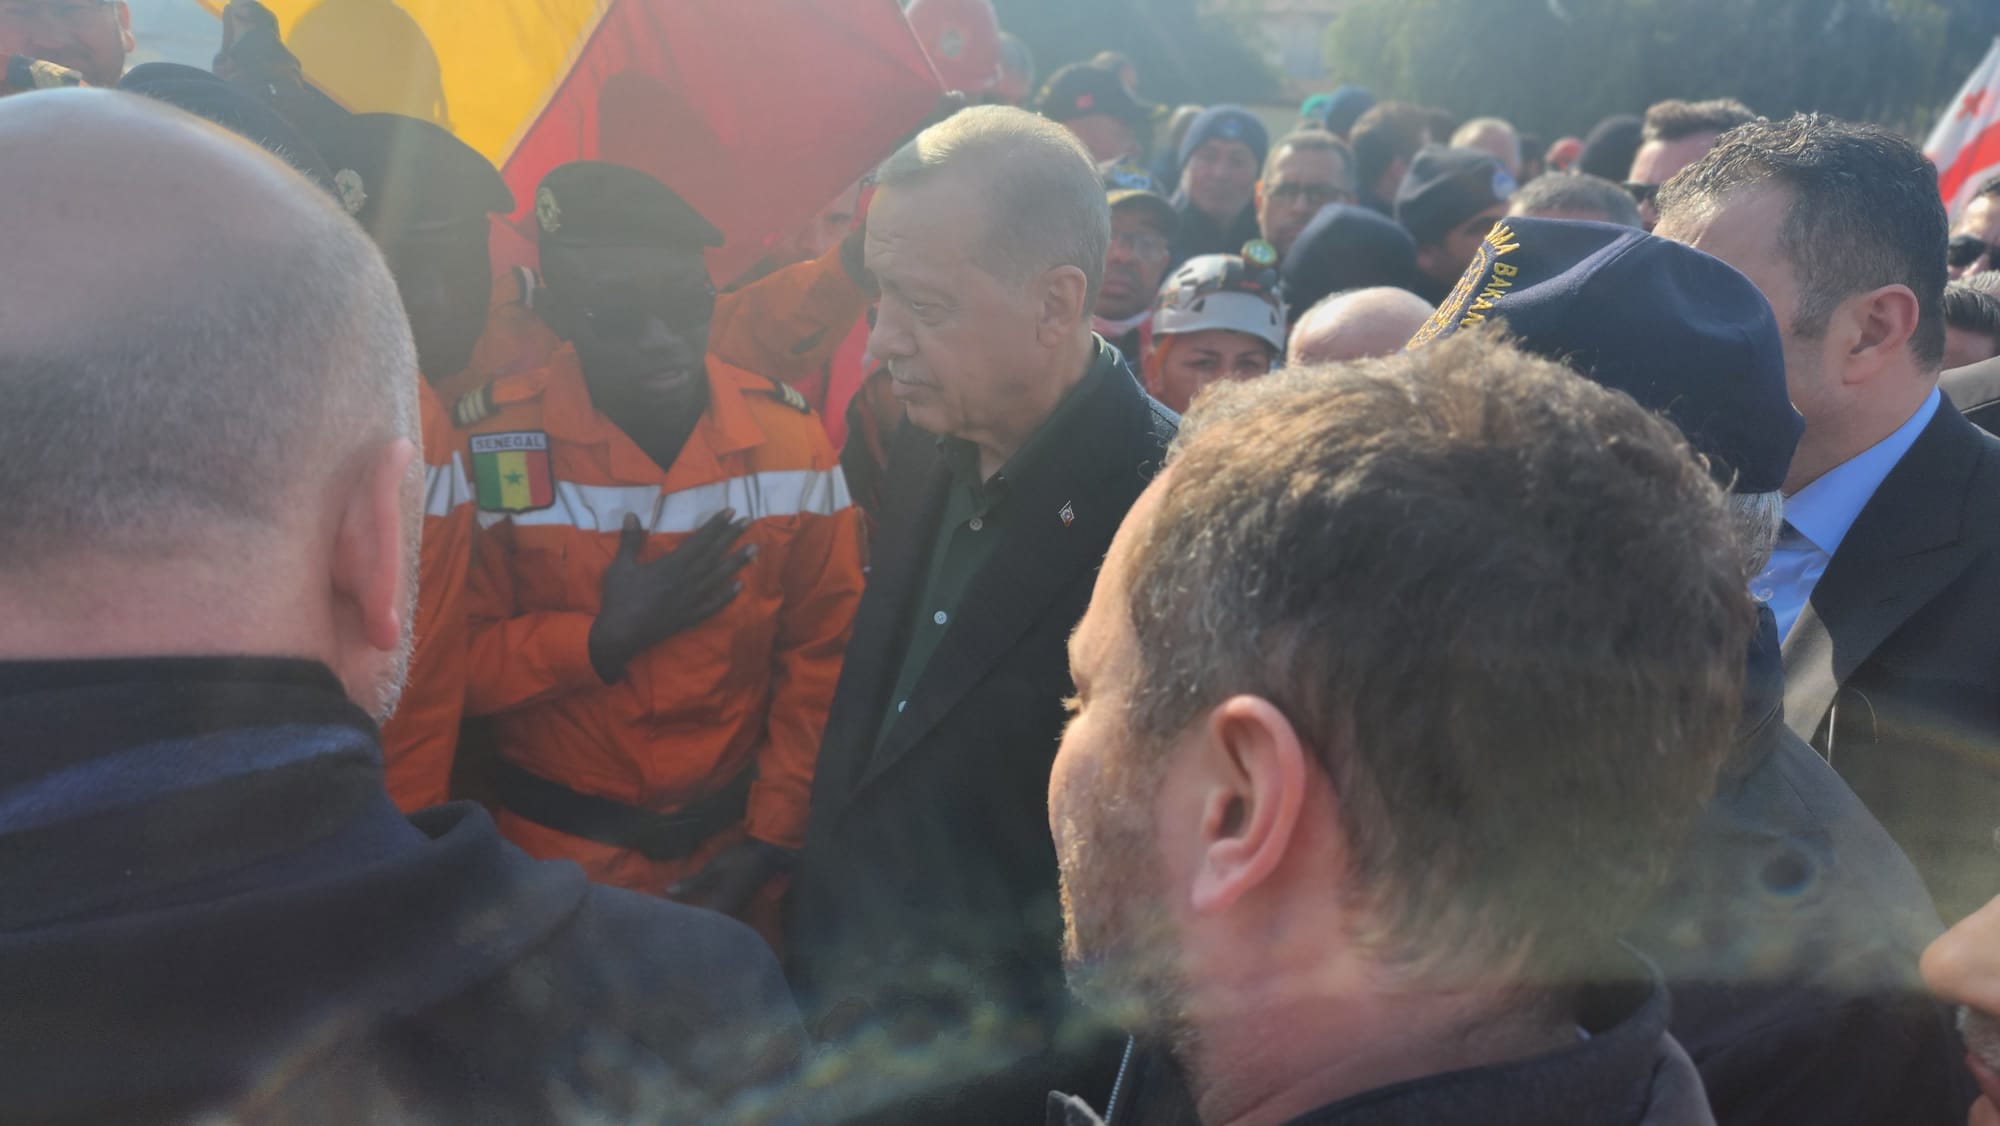 Turquie: Le Président Erdogan félicite les sapeurs-pompiers et remercie le Sénégal (Photos)